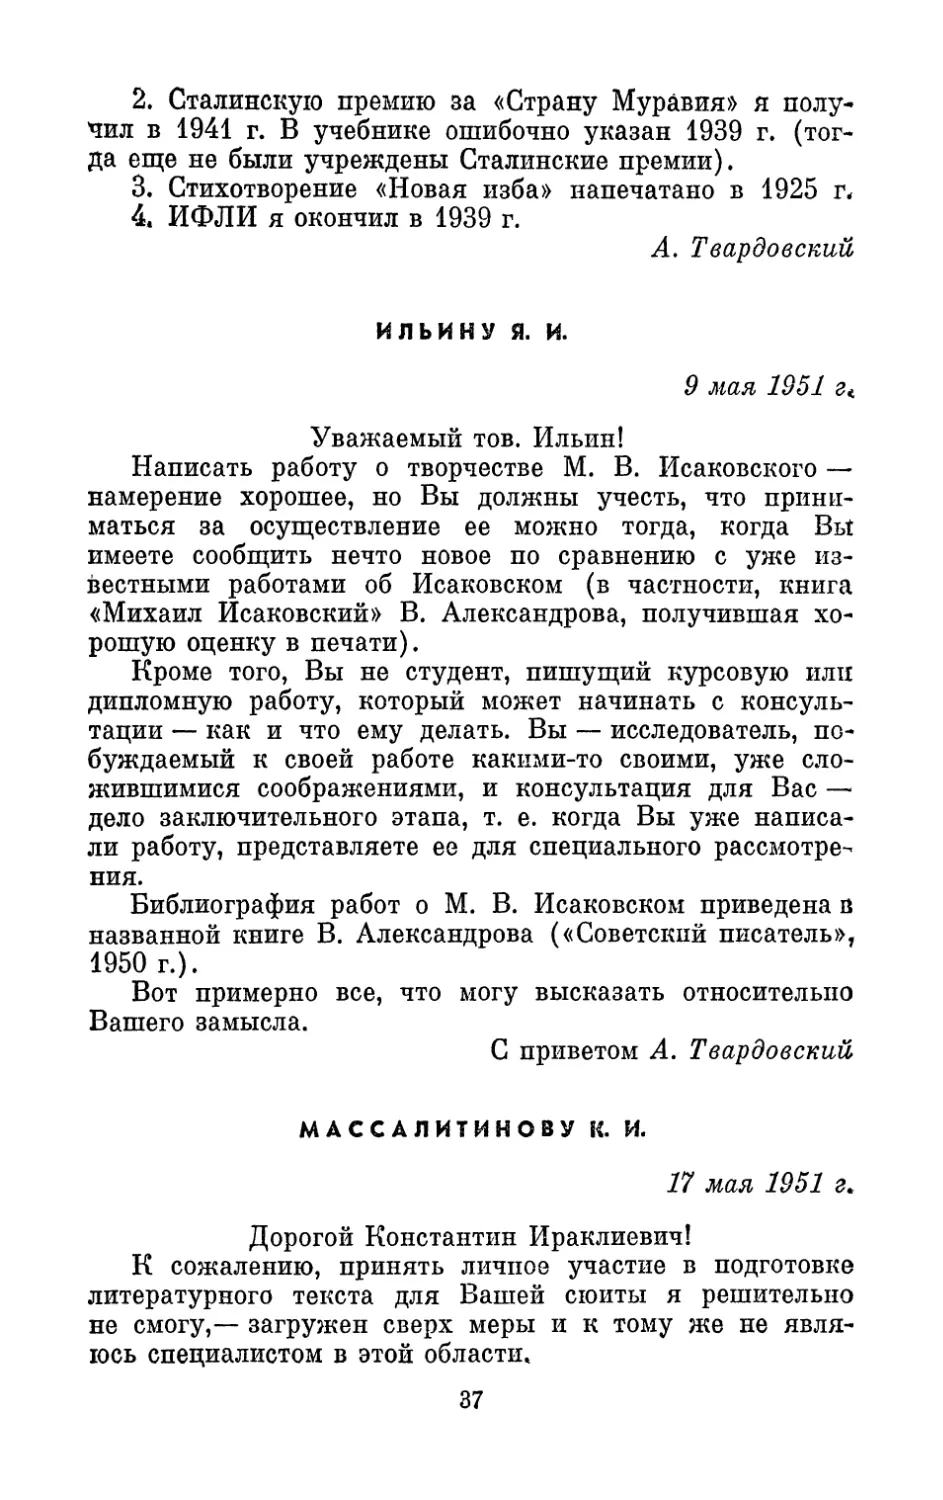 Ильину Я. И., 9 мая 1951 г.
Массалитинову К. И., 17 мая 1951 г.